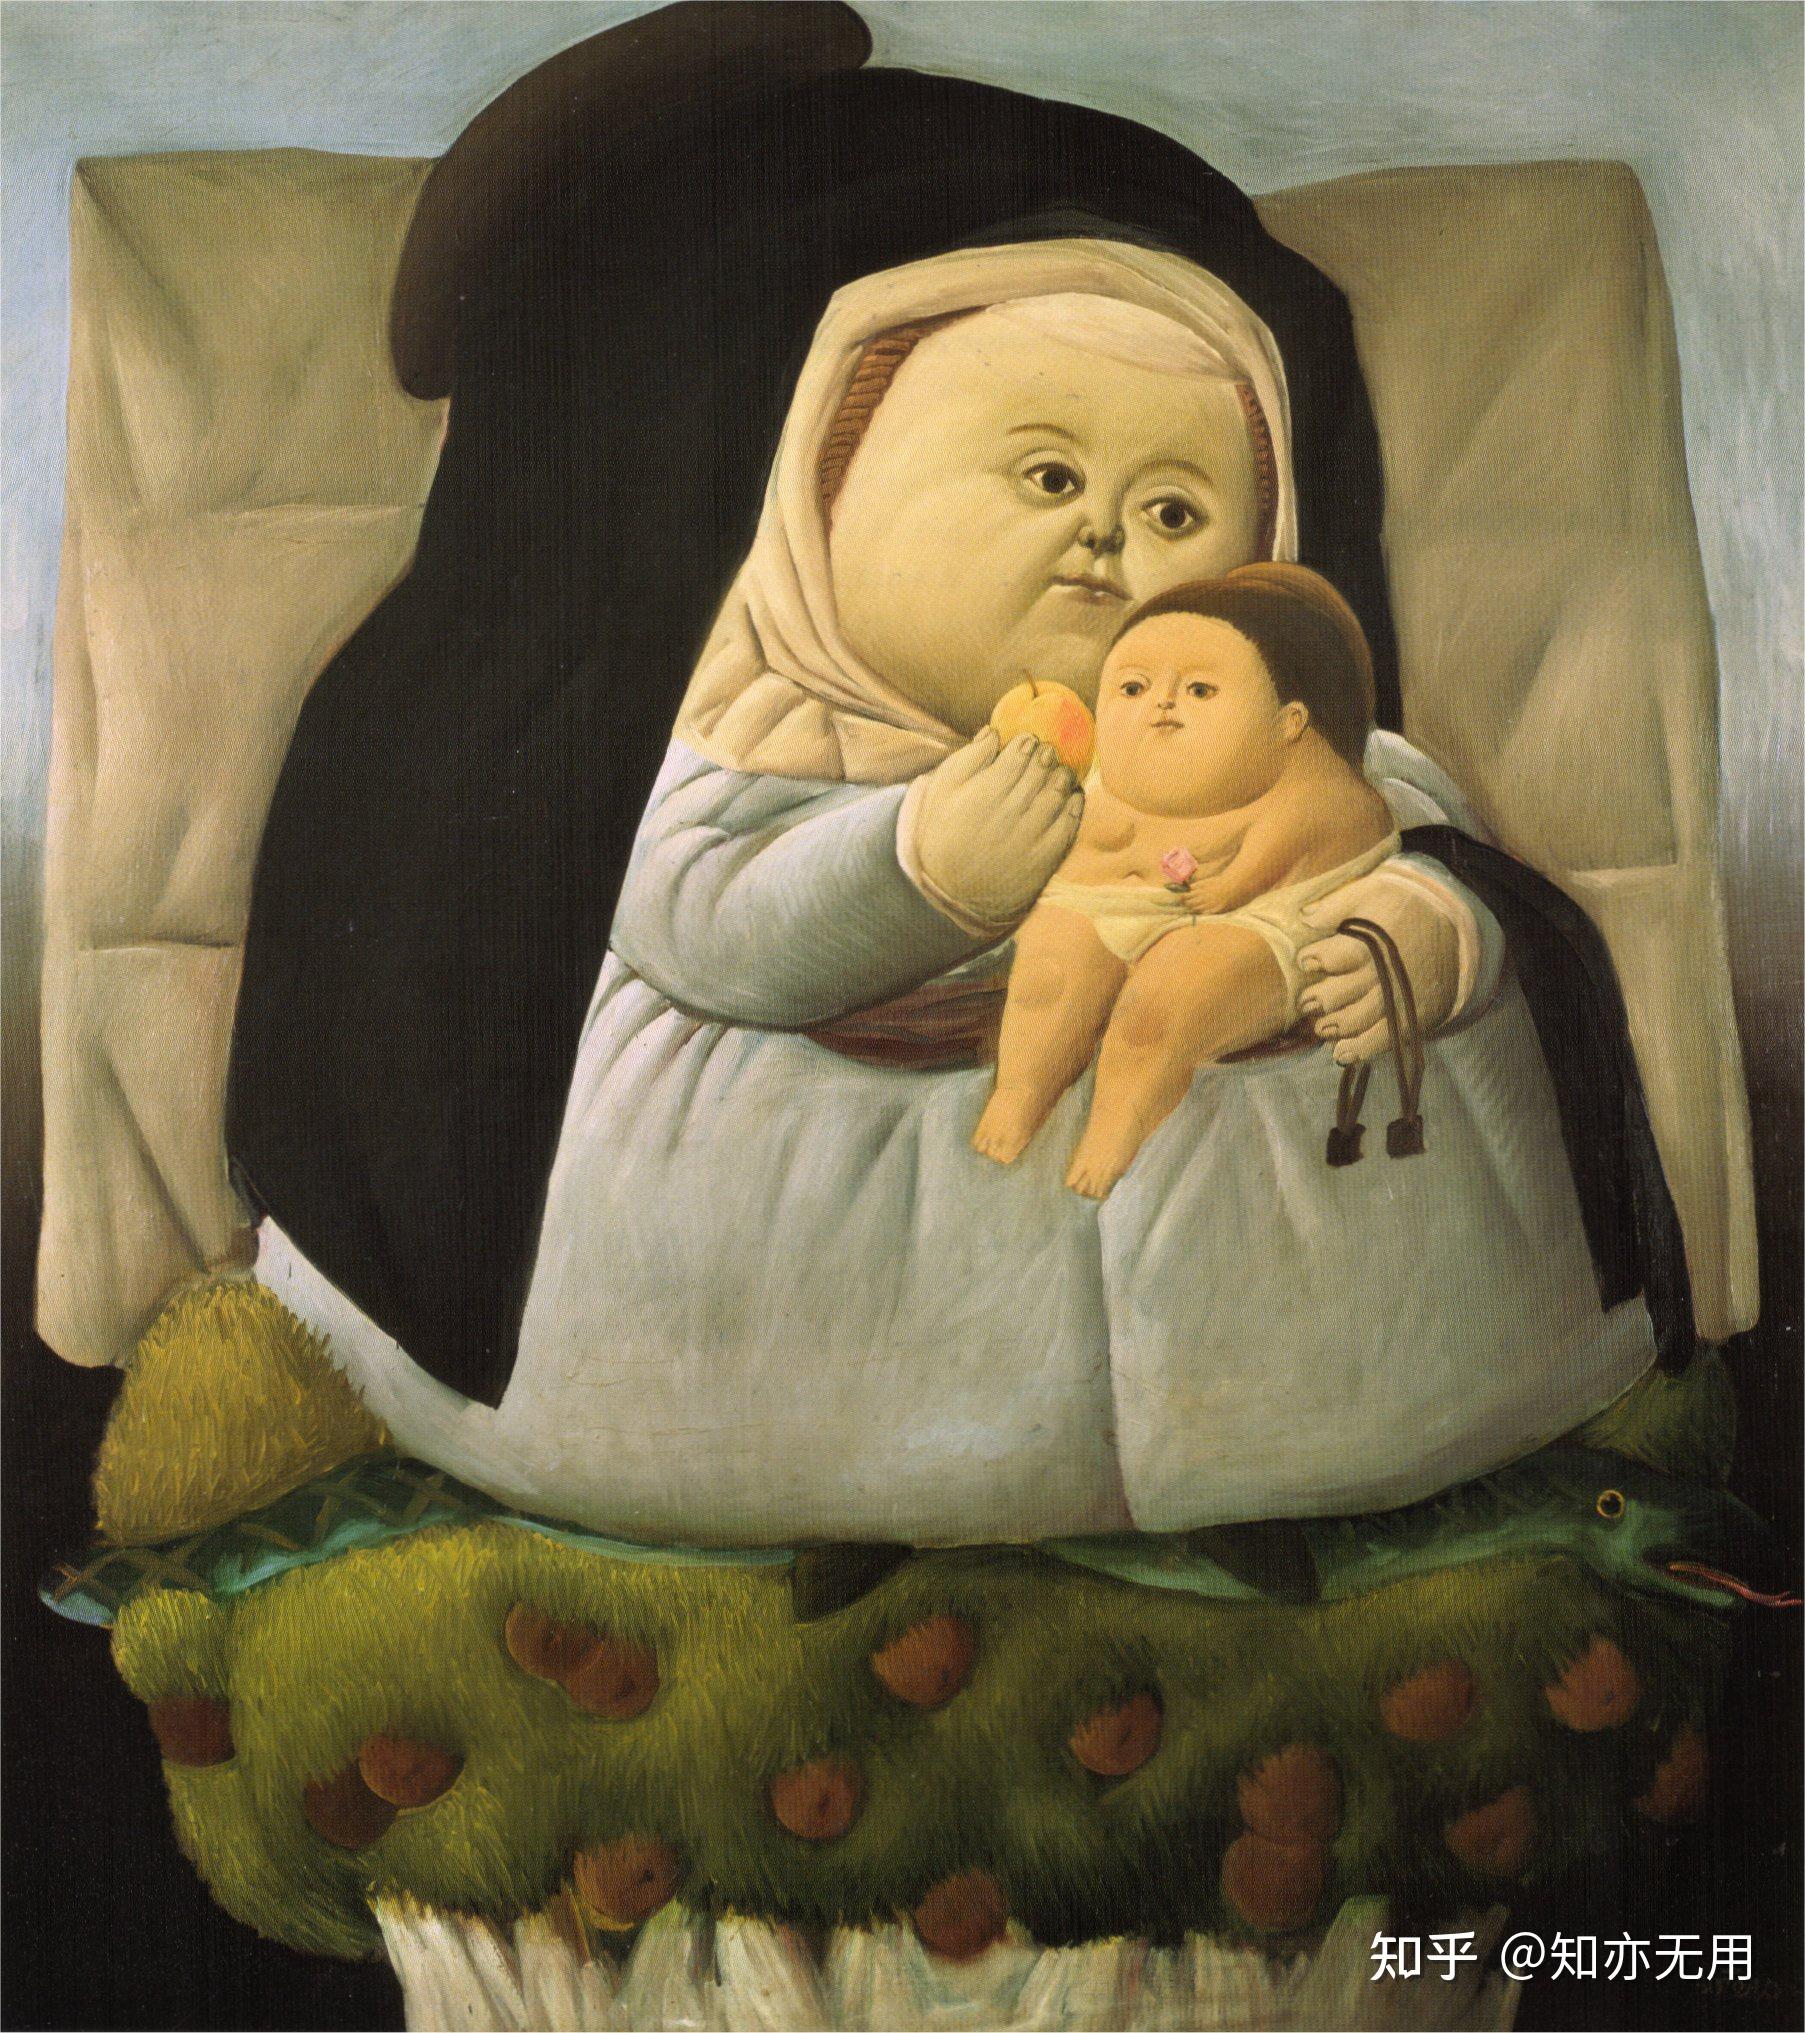 这不是胖这是体积美费尔南多博特罗绘画作品的美感世界